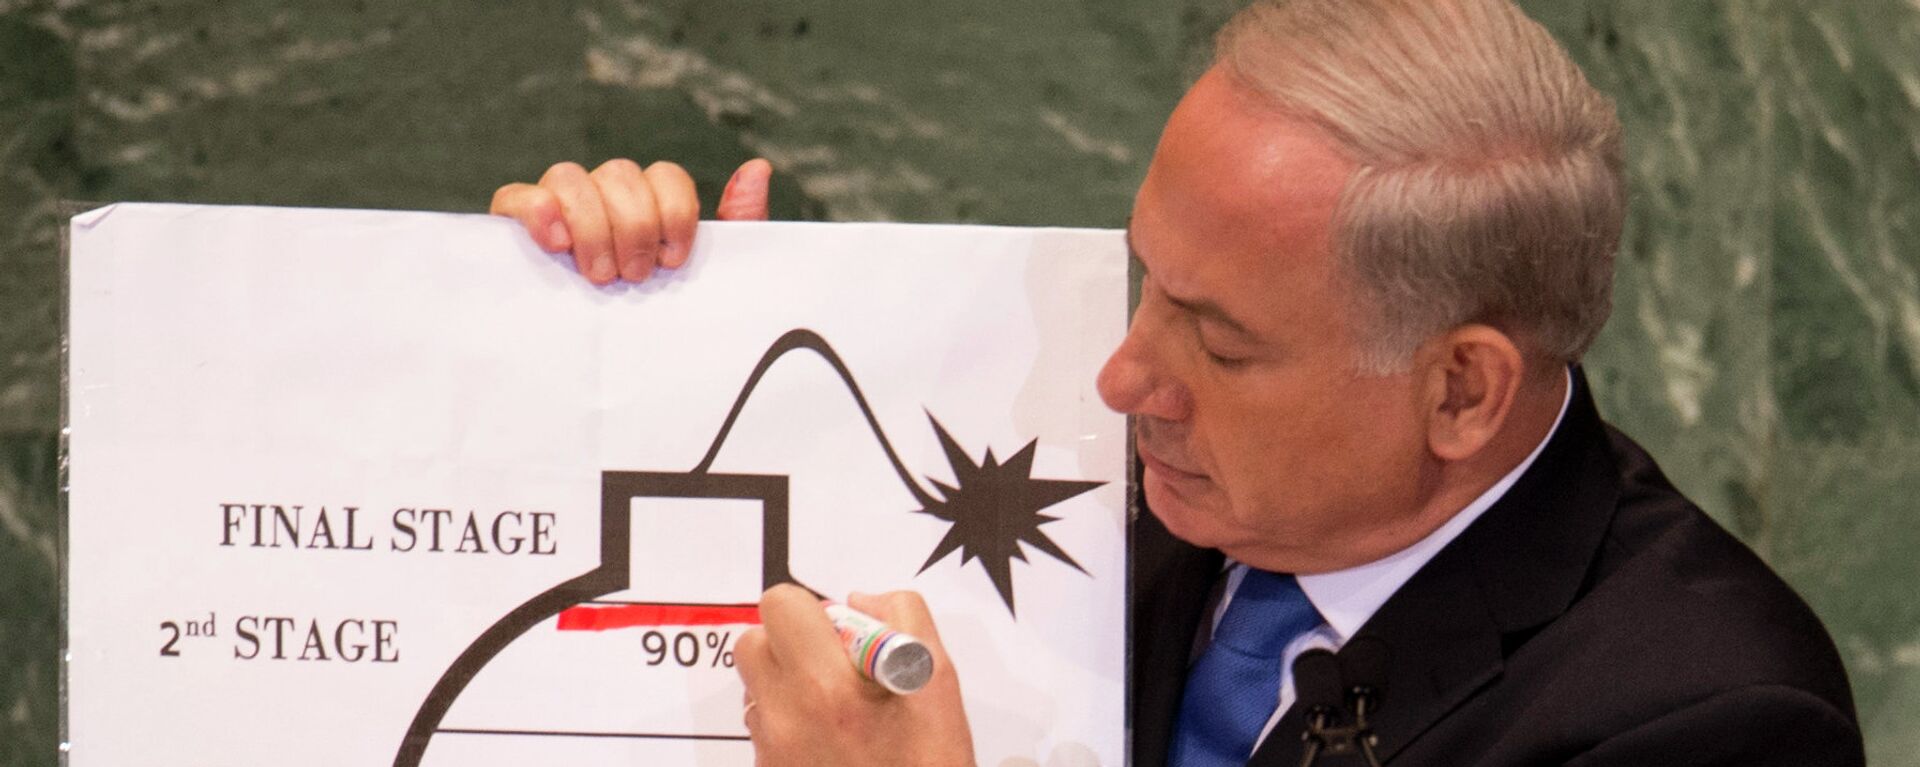 Benjamín Netanyahu, el primer Ministro israelí, habla sobre el programa nuclear iraní en la ONU  - Sputnik Mundo, 1920, 12.11.2023